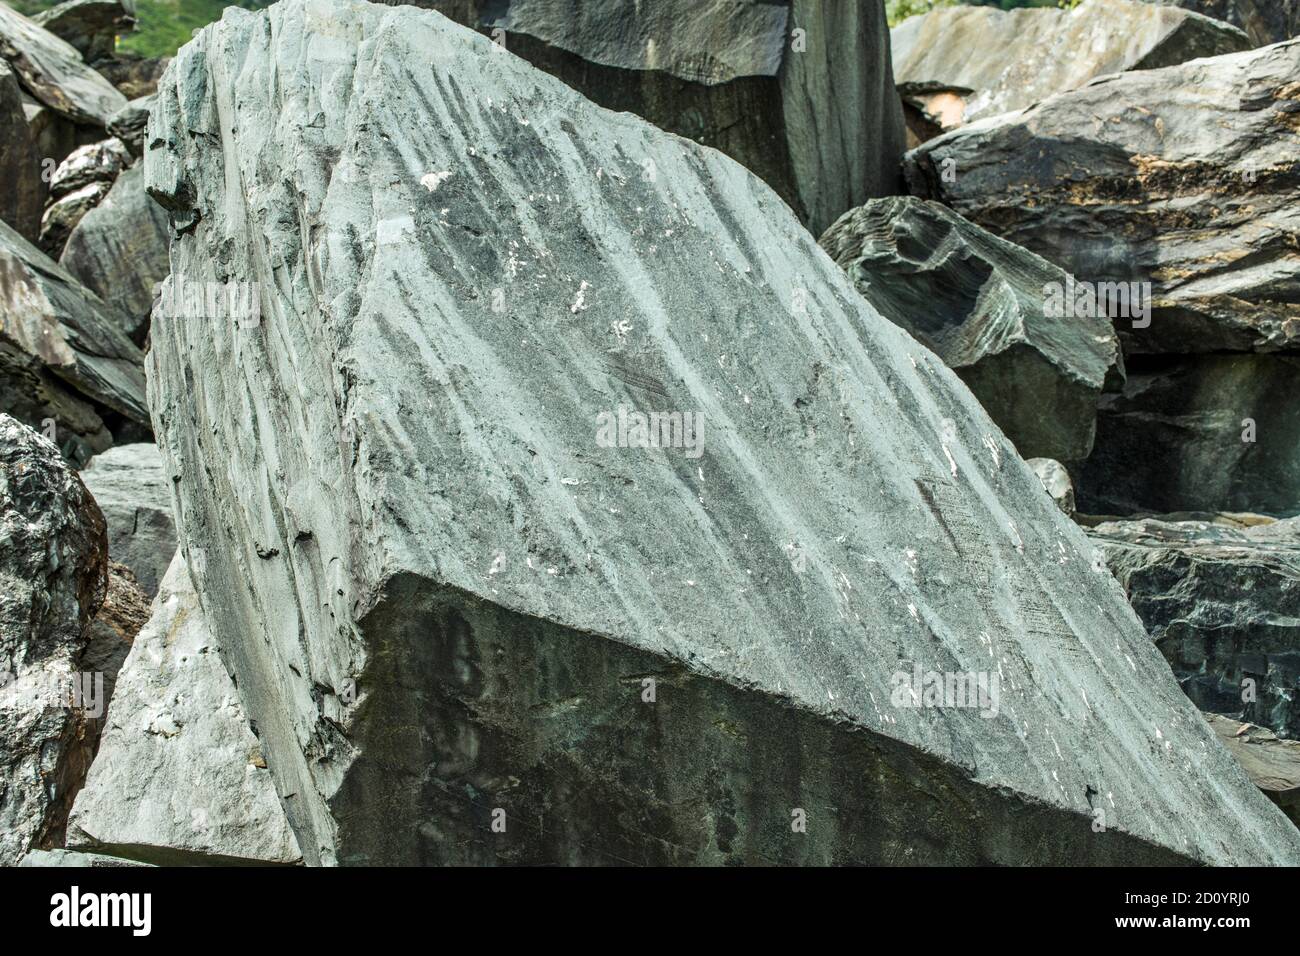 Una gran losa de pizarra verde de thart habría venido de la cercana Hodge Close Quarry. El Distrito de los Lagos durante algún tiempo tenía una industria de pizarra muy ocupada. Foto de stock